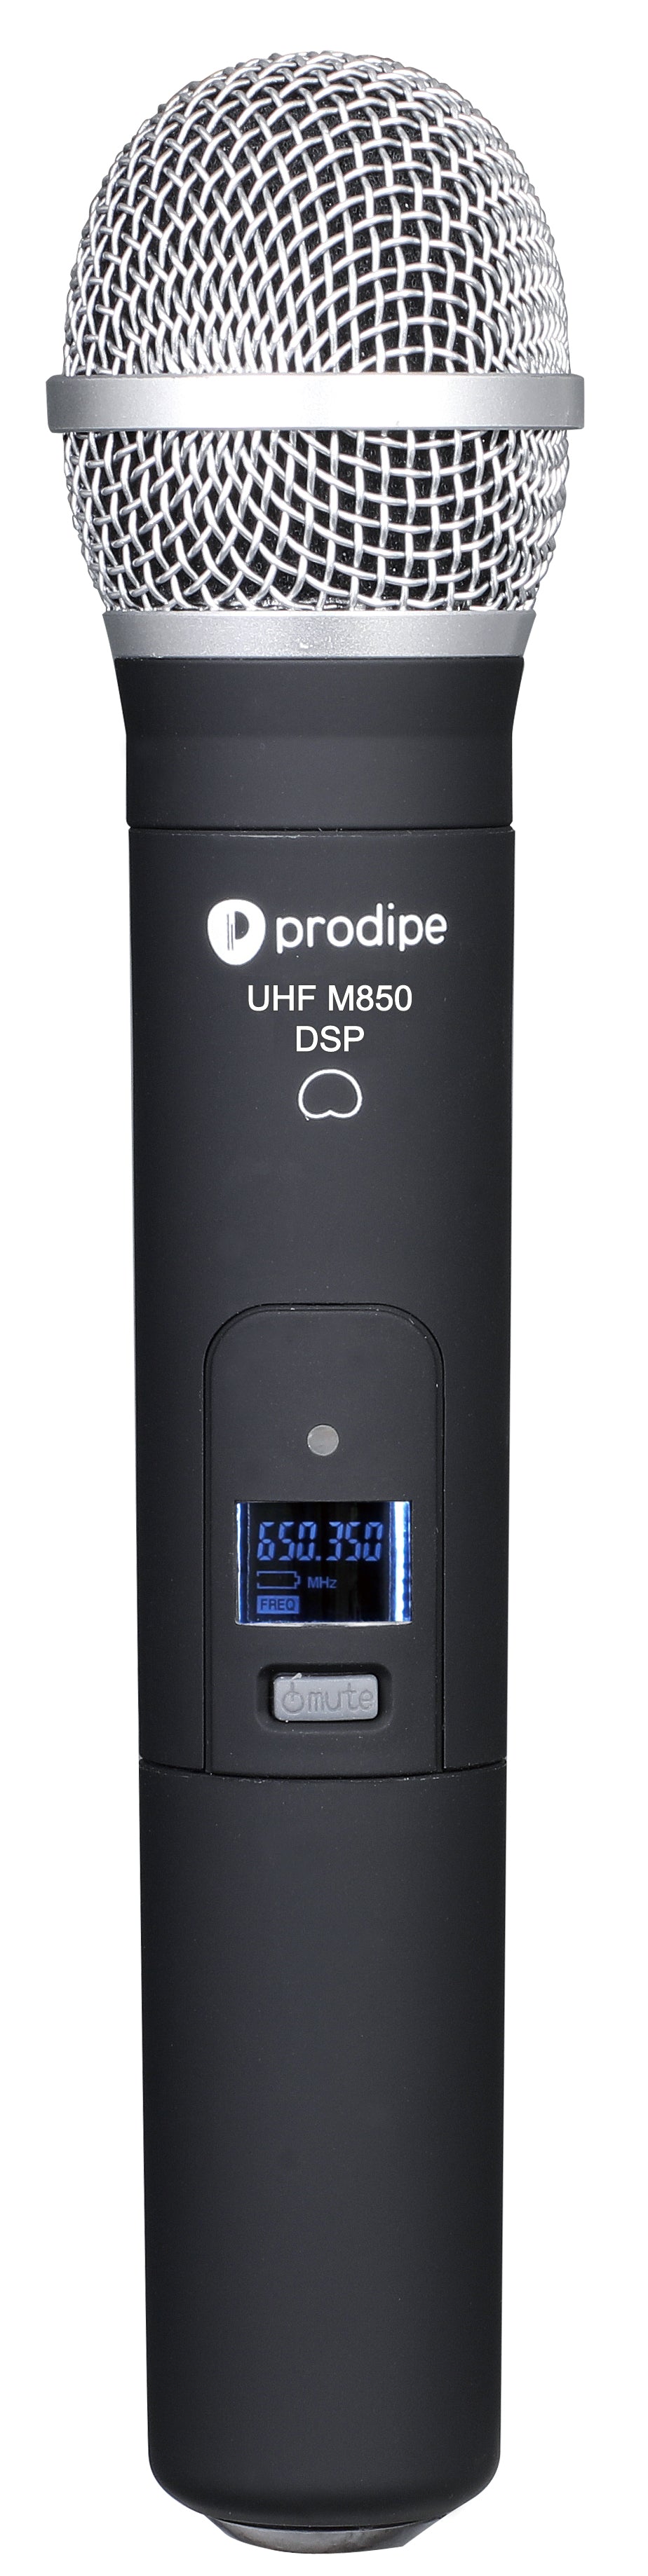 Prodipe UHF M850 DSP Duo